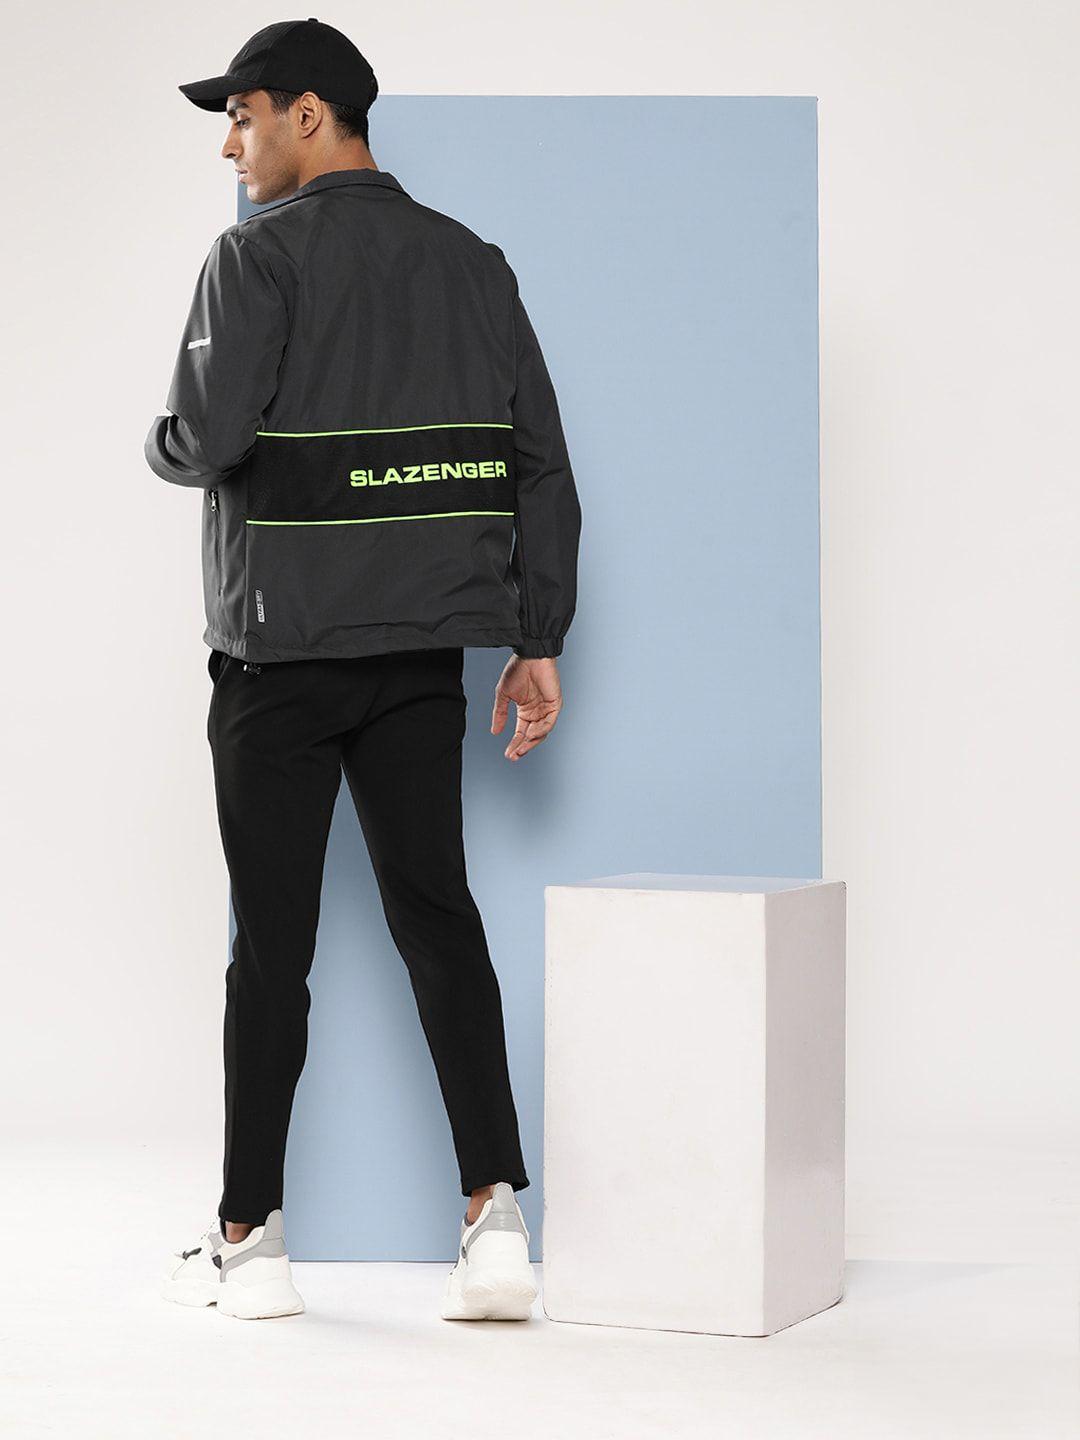 slazenger ultra-dry reflective strip sports jacket